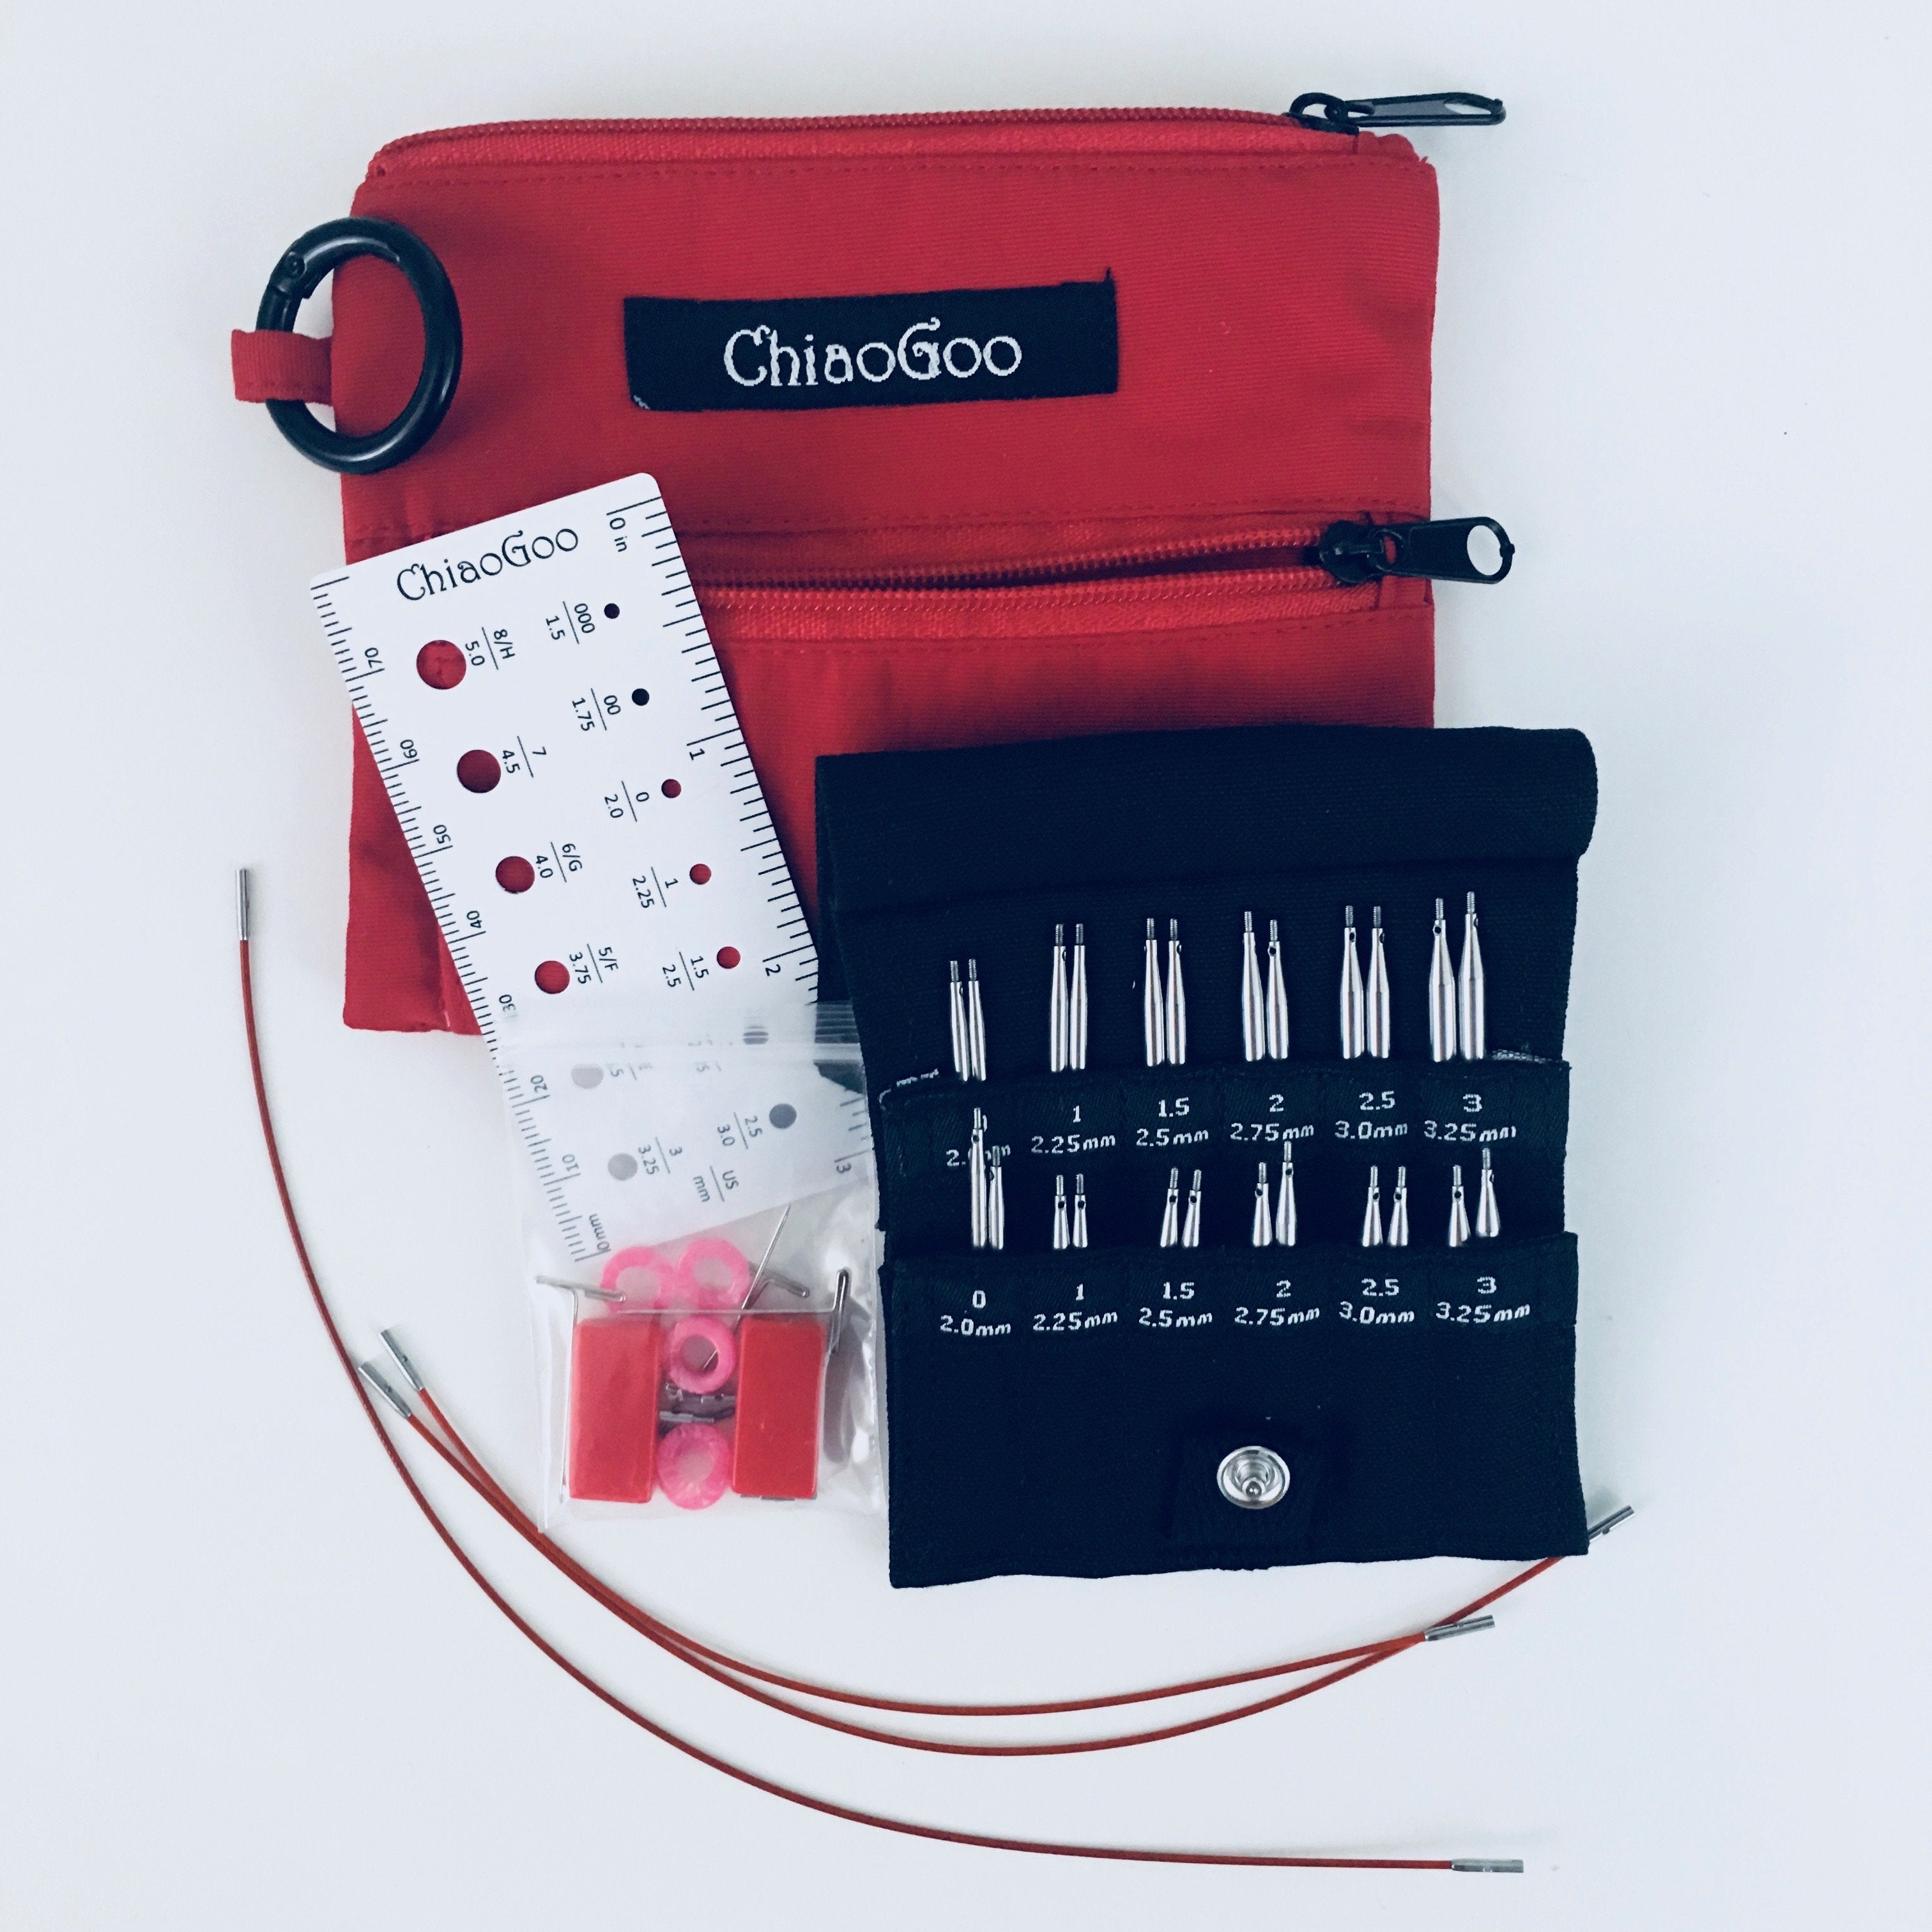 ChiaoGoo Interchangeable Shorties Needle Set